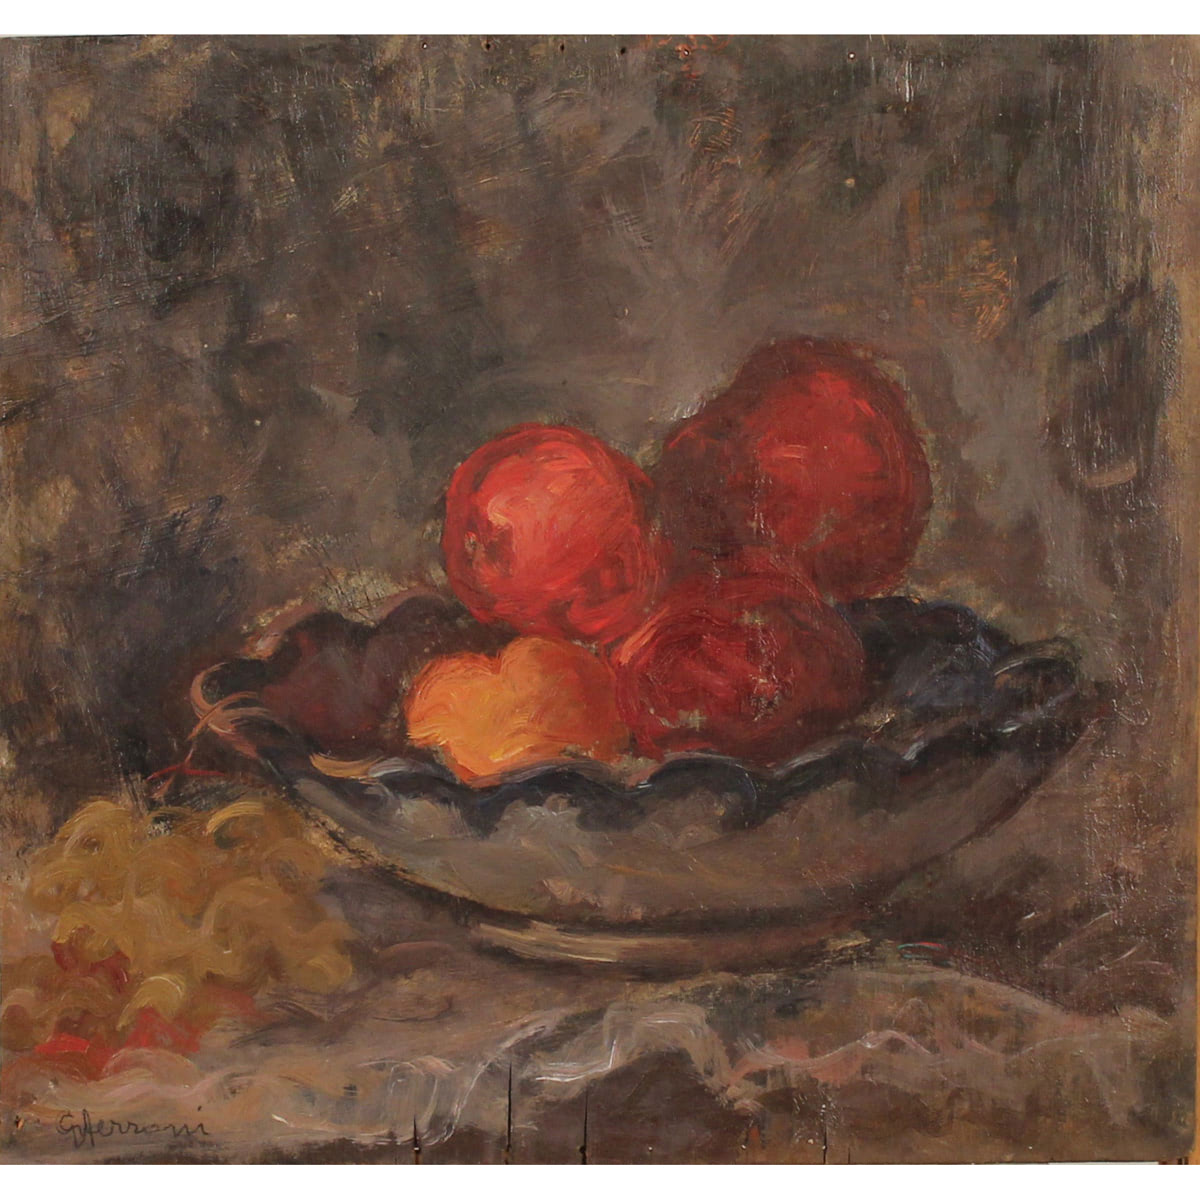 GUIDO FERRONI (1888/1979) “Natura morta di frutta" - "Still life of fruit"